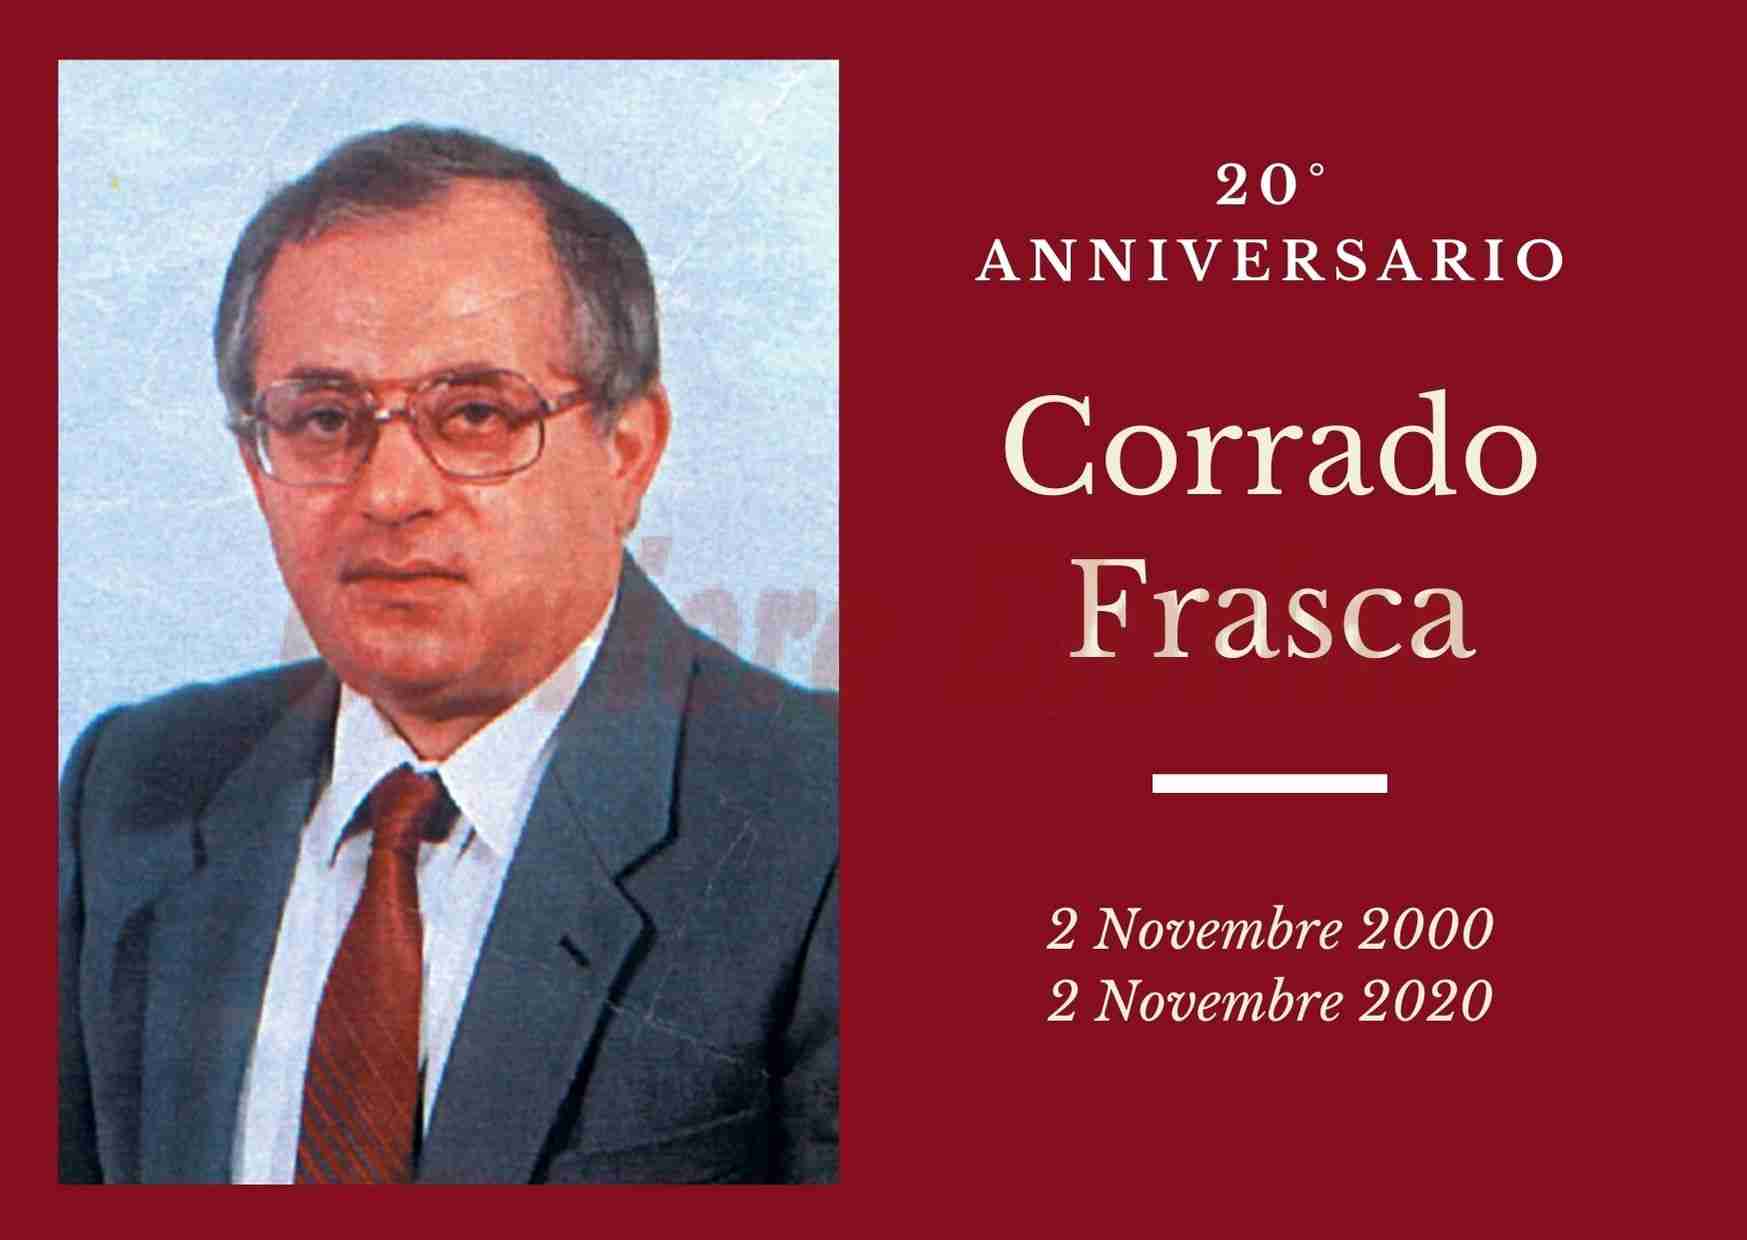 Necrologio: ricorre oggi il 20° anniversario di Corrado Frasca